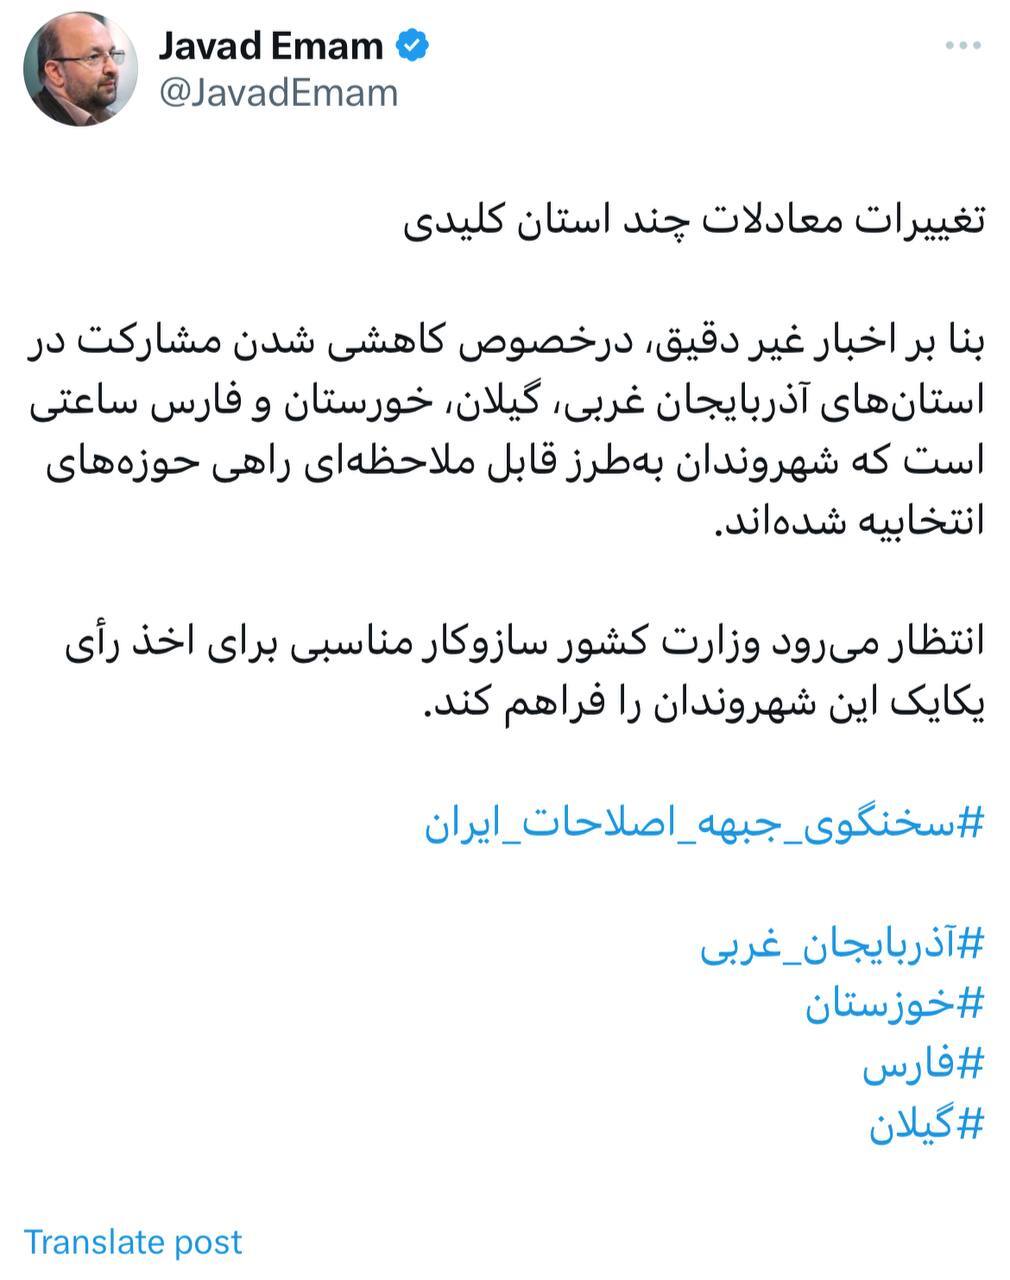 ادعای سخنگوی جبهه اصلاحات درباره مشارکت در آذربایجان غربی، گیلان، خوزستان و فارس